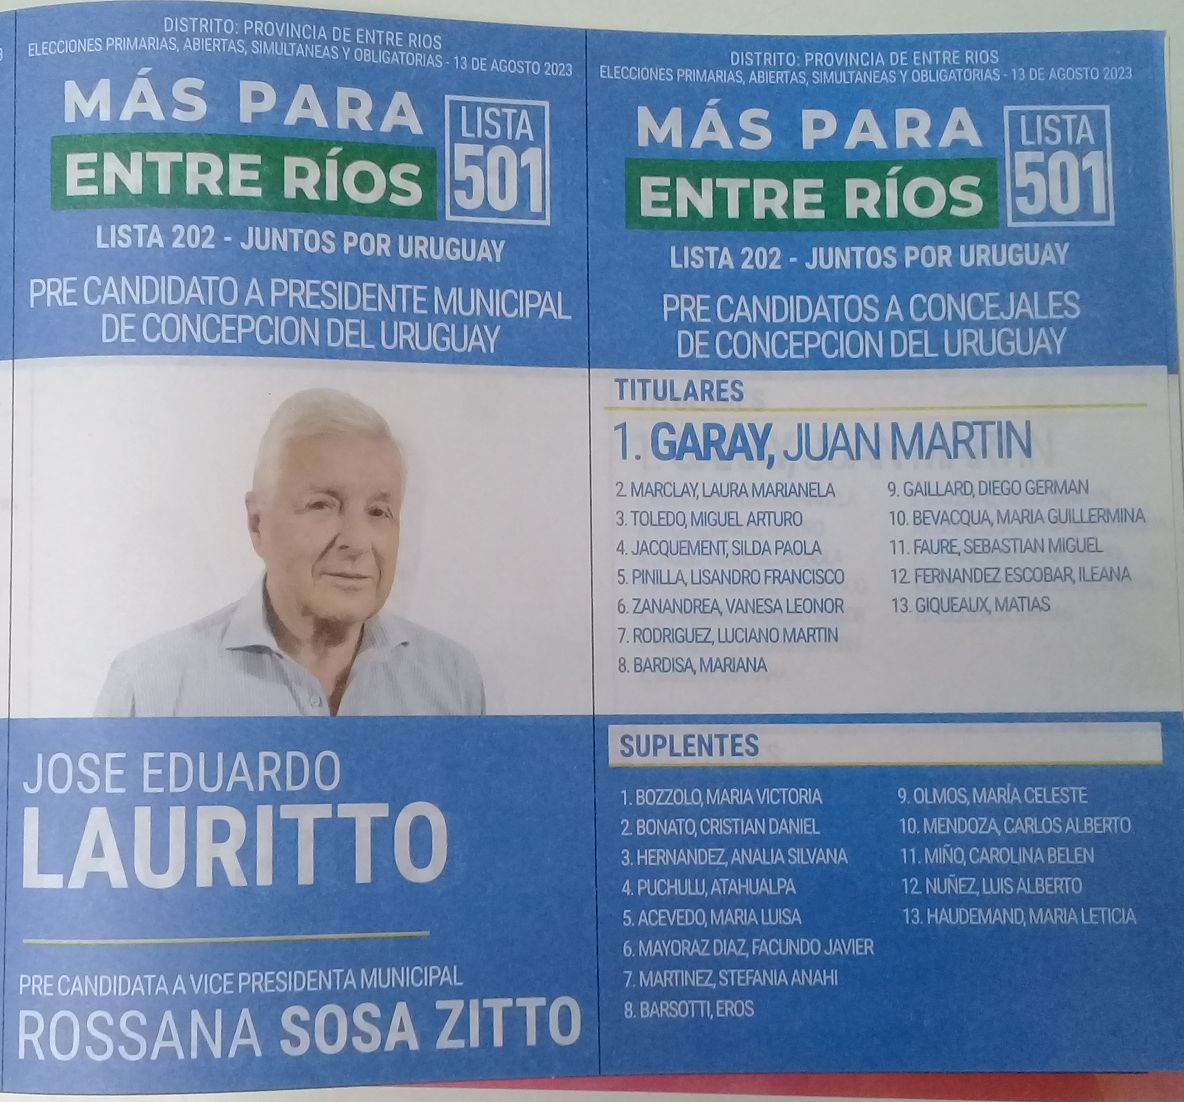 Lista 501: Más Para Entre Ríos - José Eduardo Lauritto.